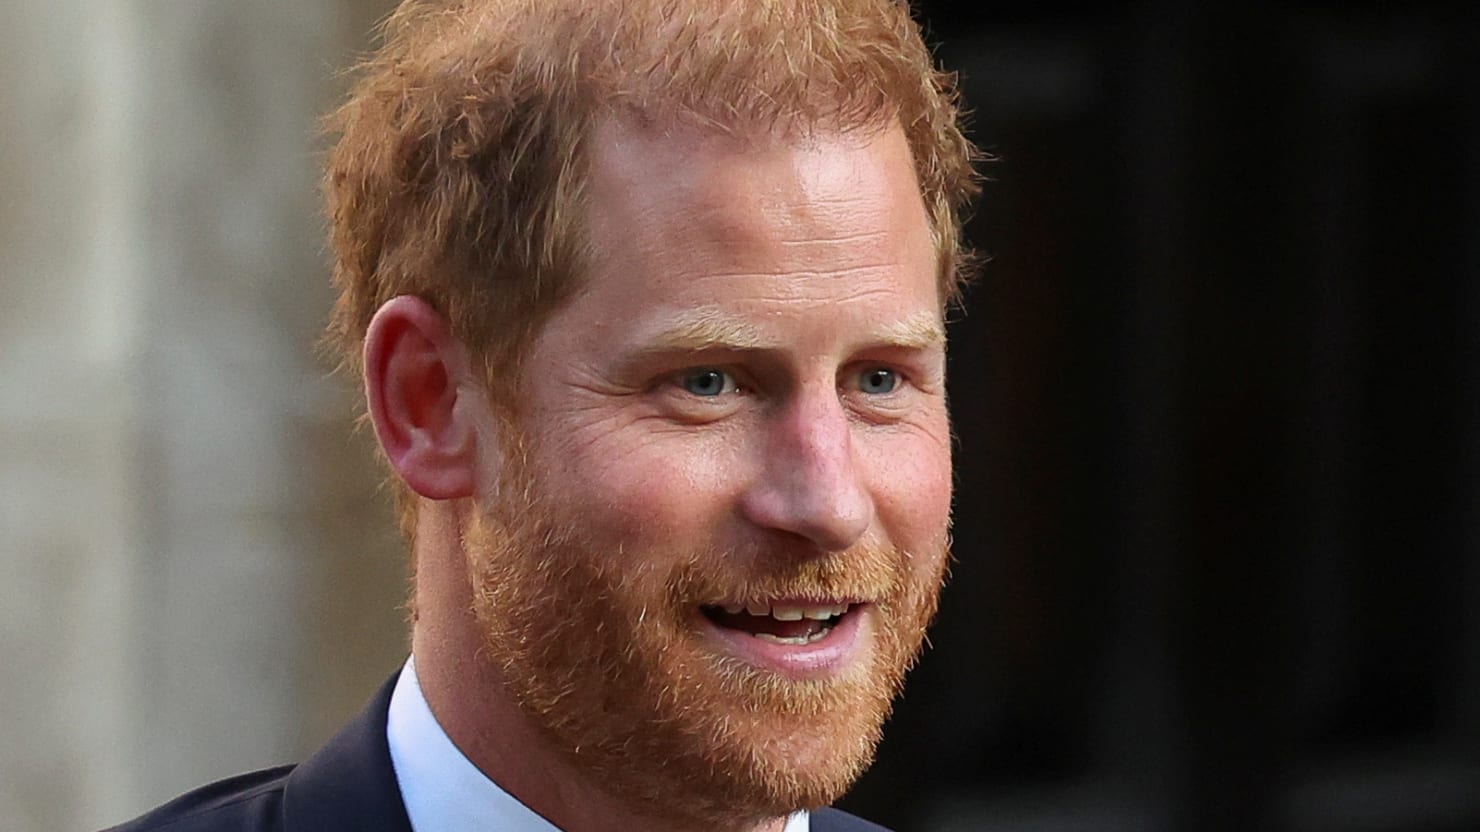 O Príncipe Harry está ‘profundamente afetado’ depois de não ver o Rei Charles em uma visita ao Reino Unido